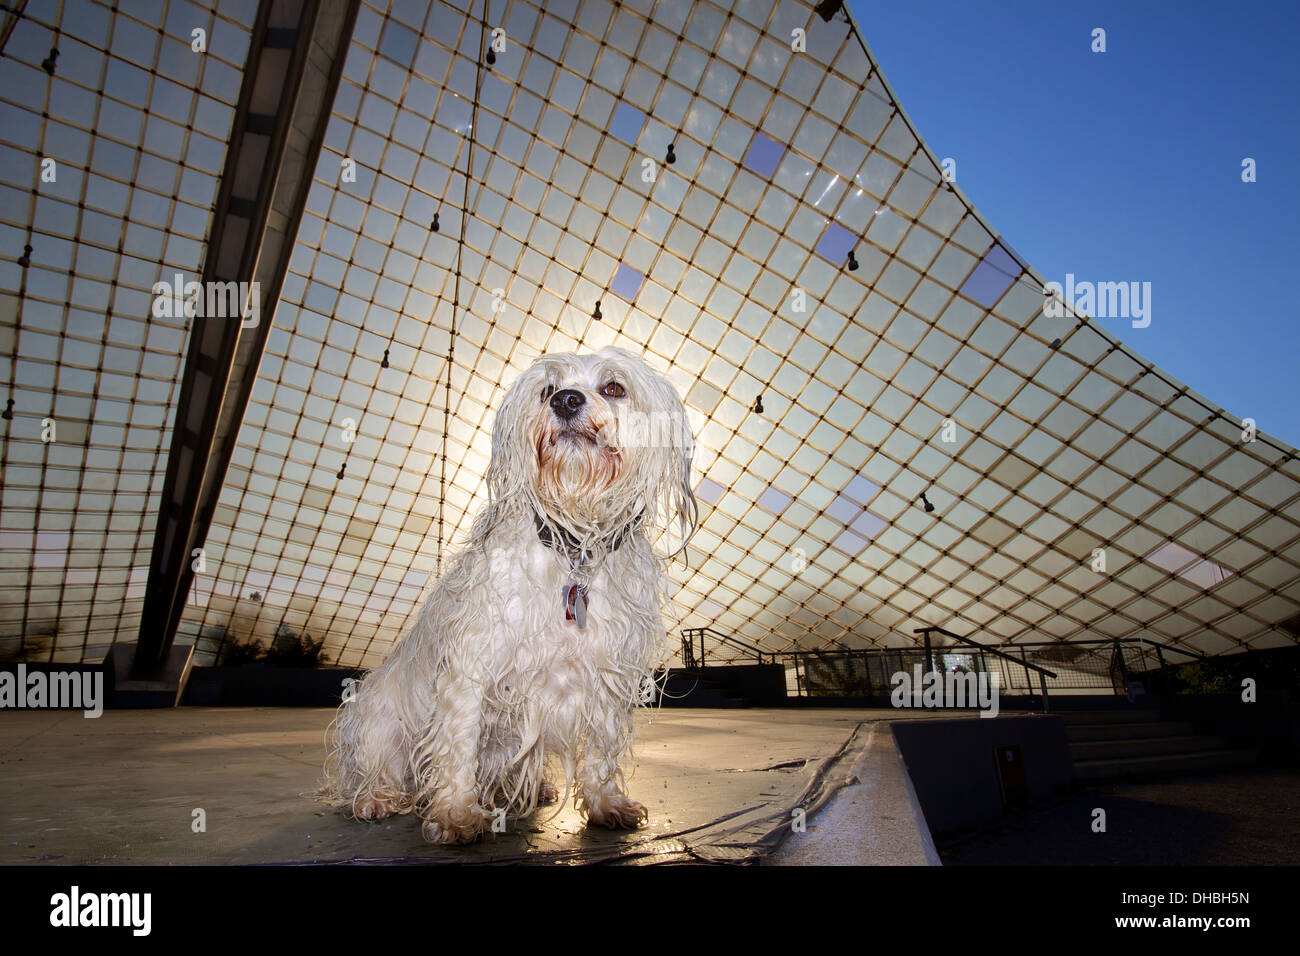 Un piccolo bagnato i capelli lunghi cane si siede su un palcoscenico all'aperto nella scena. in background, il tetto dello stadio e il retro del cane, il Foto Stock